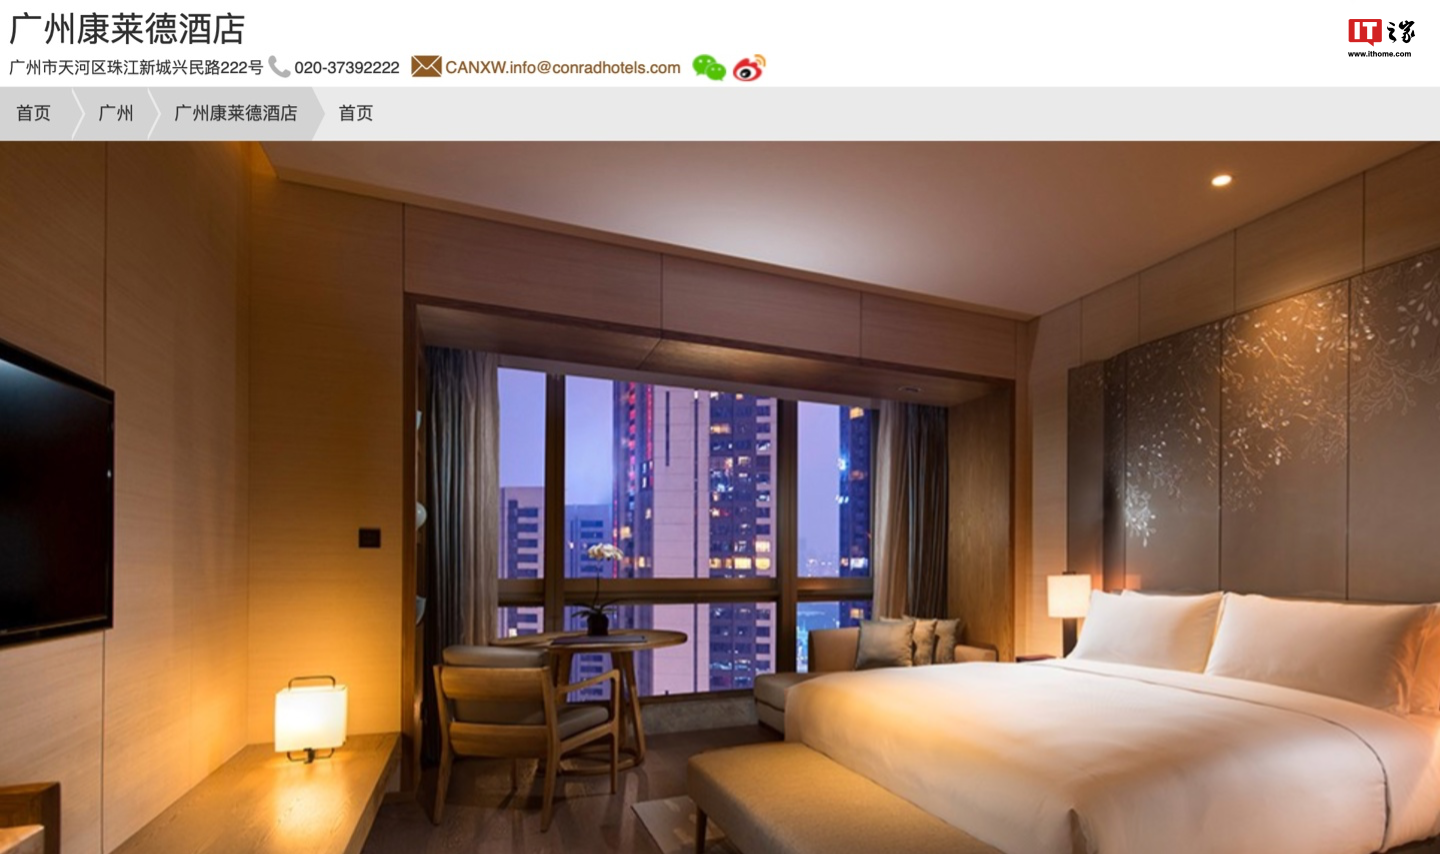 广州一酒店 Wi-Fi 费“一天 110 元”引热议，你能接受住店网络单独收费吗 - 第 3 张图片 - 小城生活